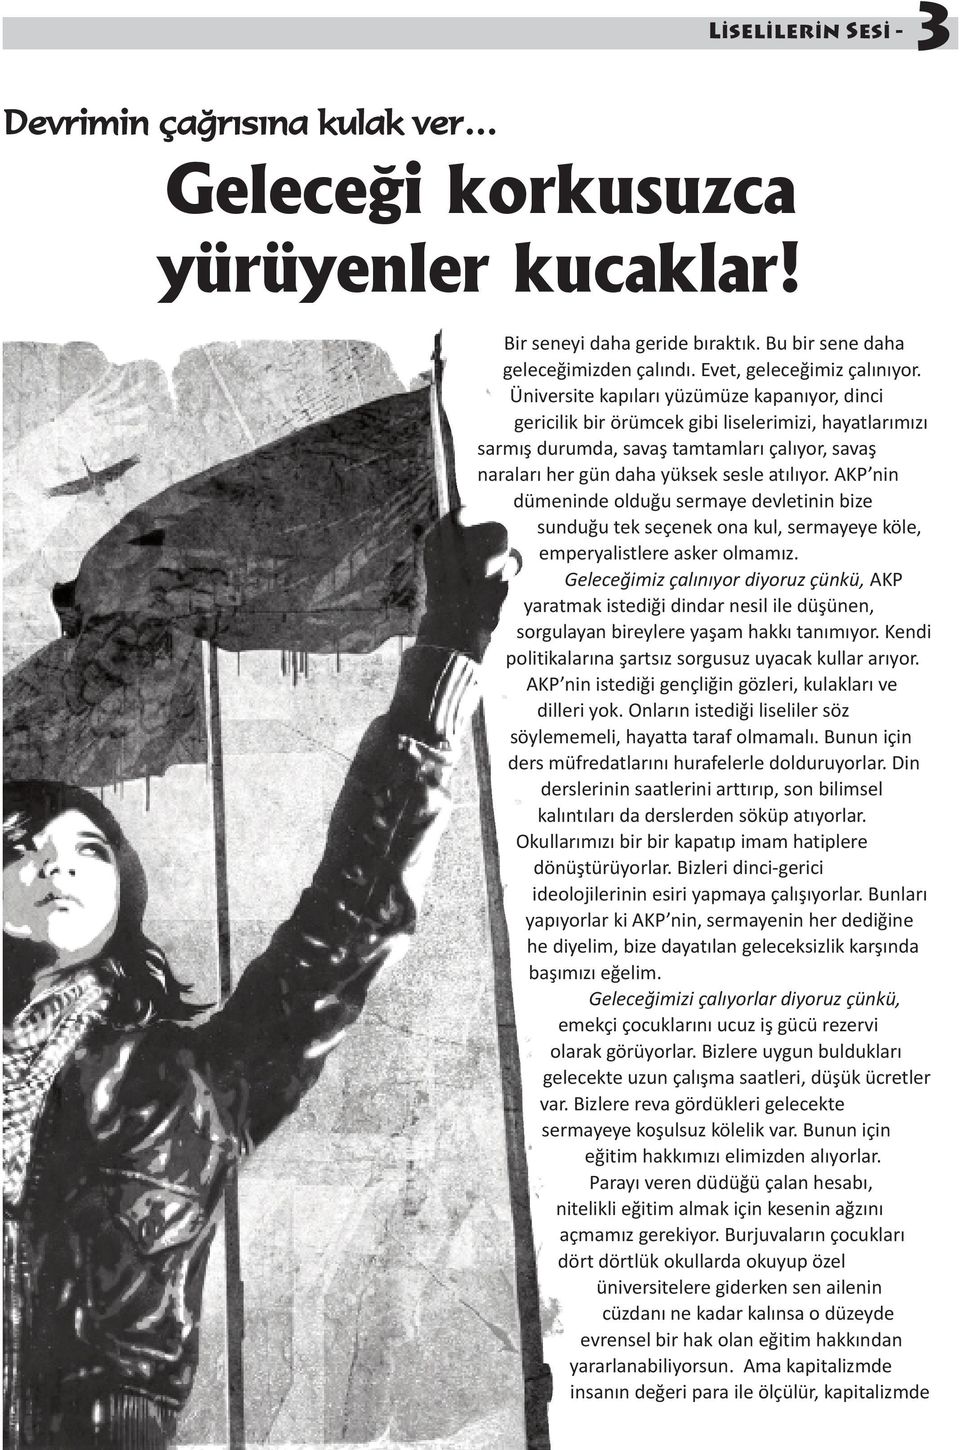 AKP nin dümeninde olduğu sermaye devletinin bize sunduğu tek seçenek ona kul, sermayeye köle, emperyalistlere asker olmamız.